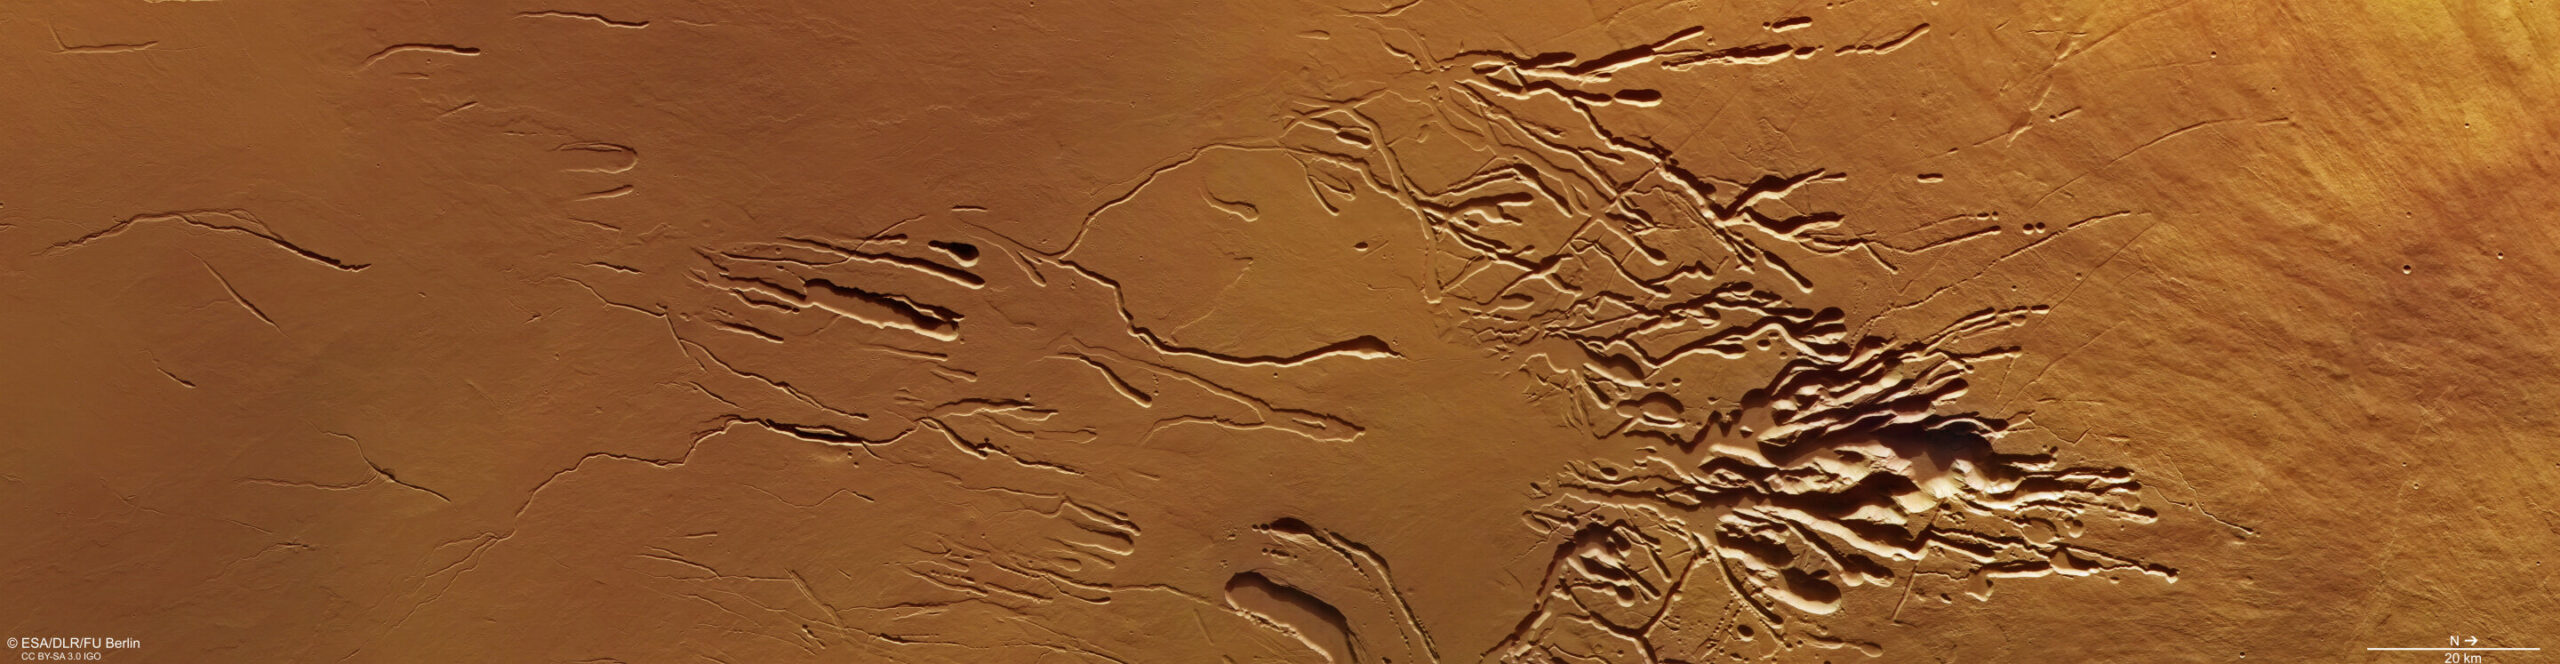 Warframe реликвии эры лит на марсе фото 15